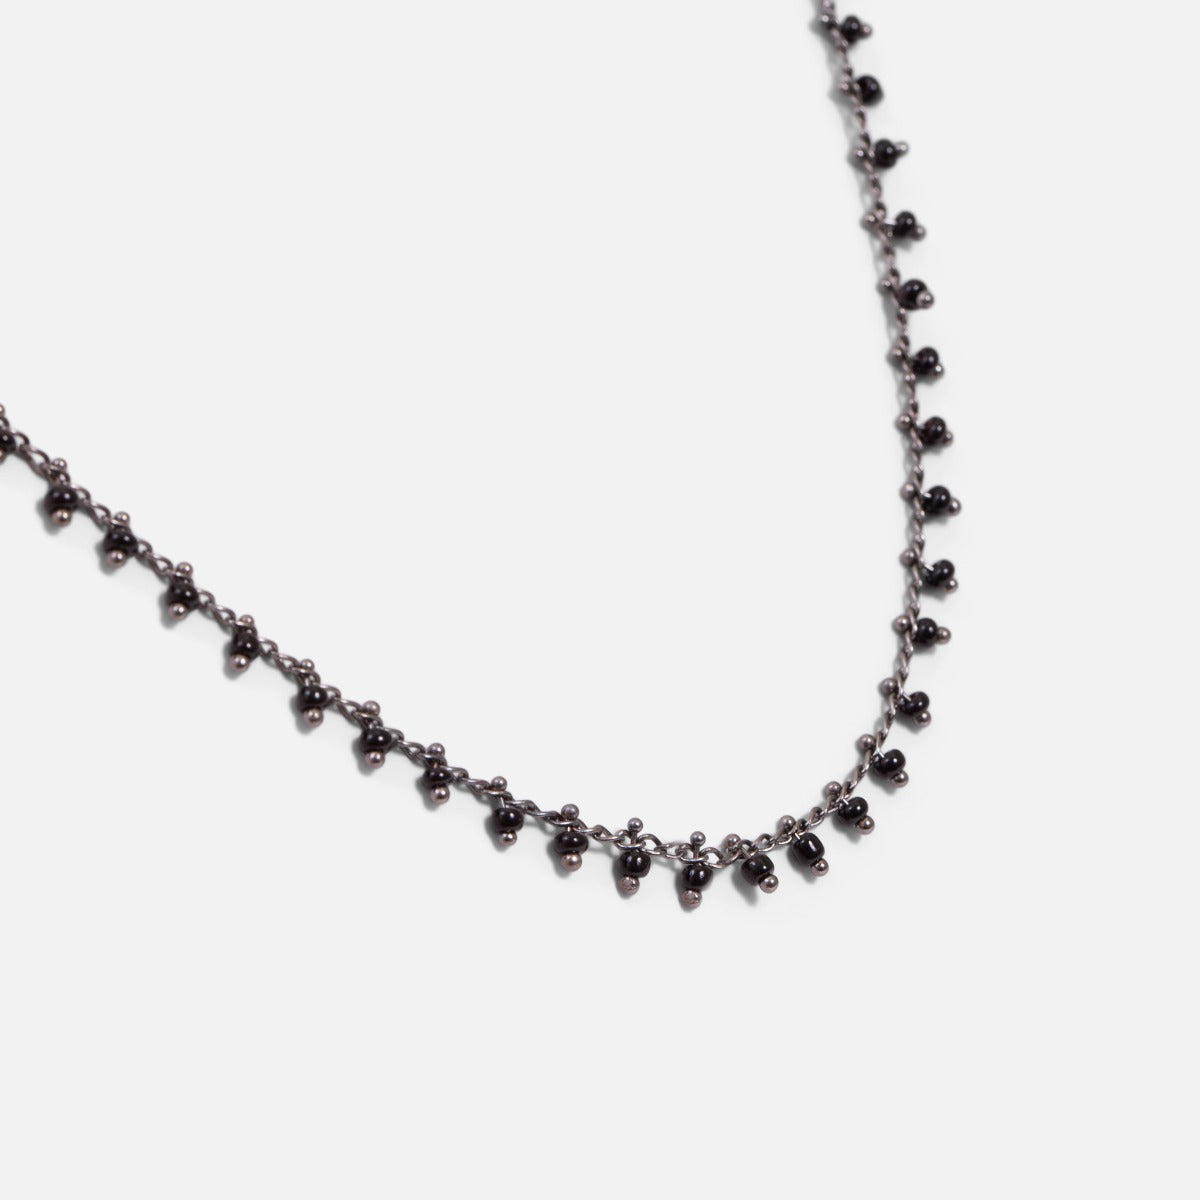 Long collier argenté et noir avec chaîne effet billes